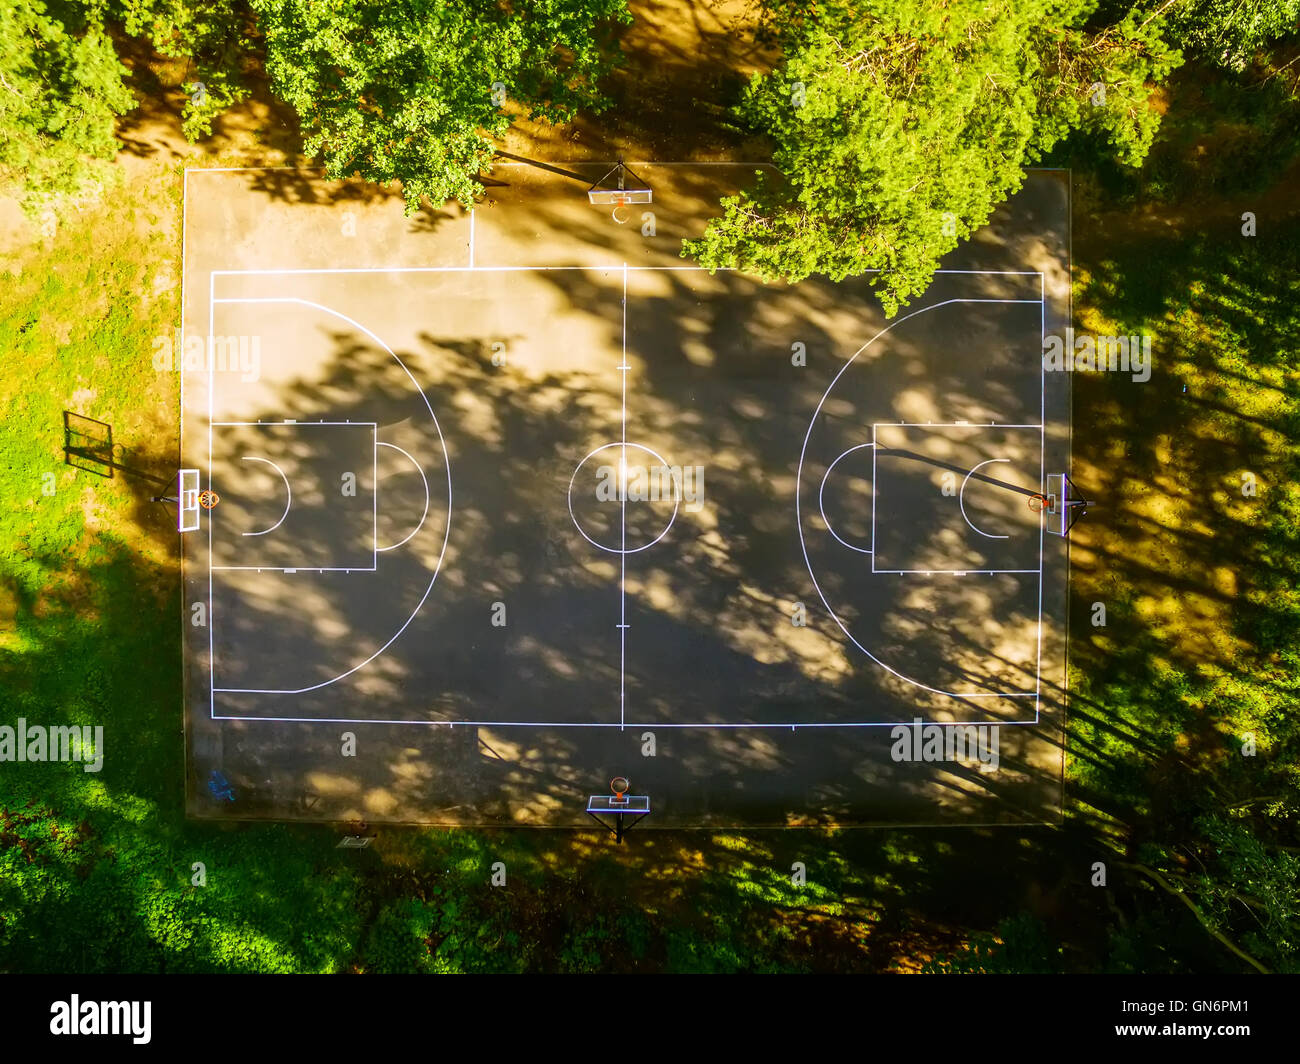 Lay, antena plana vista superior de Piscina Cancha de baloncesto Foto de stock